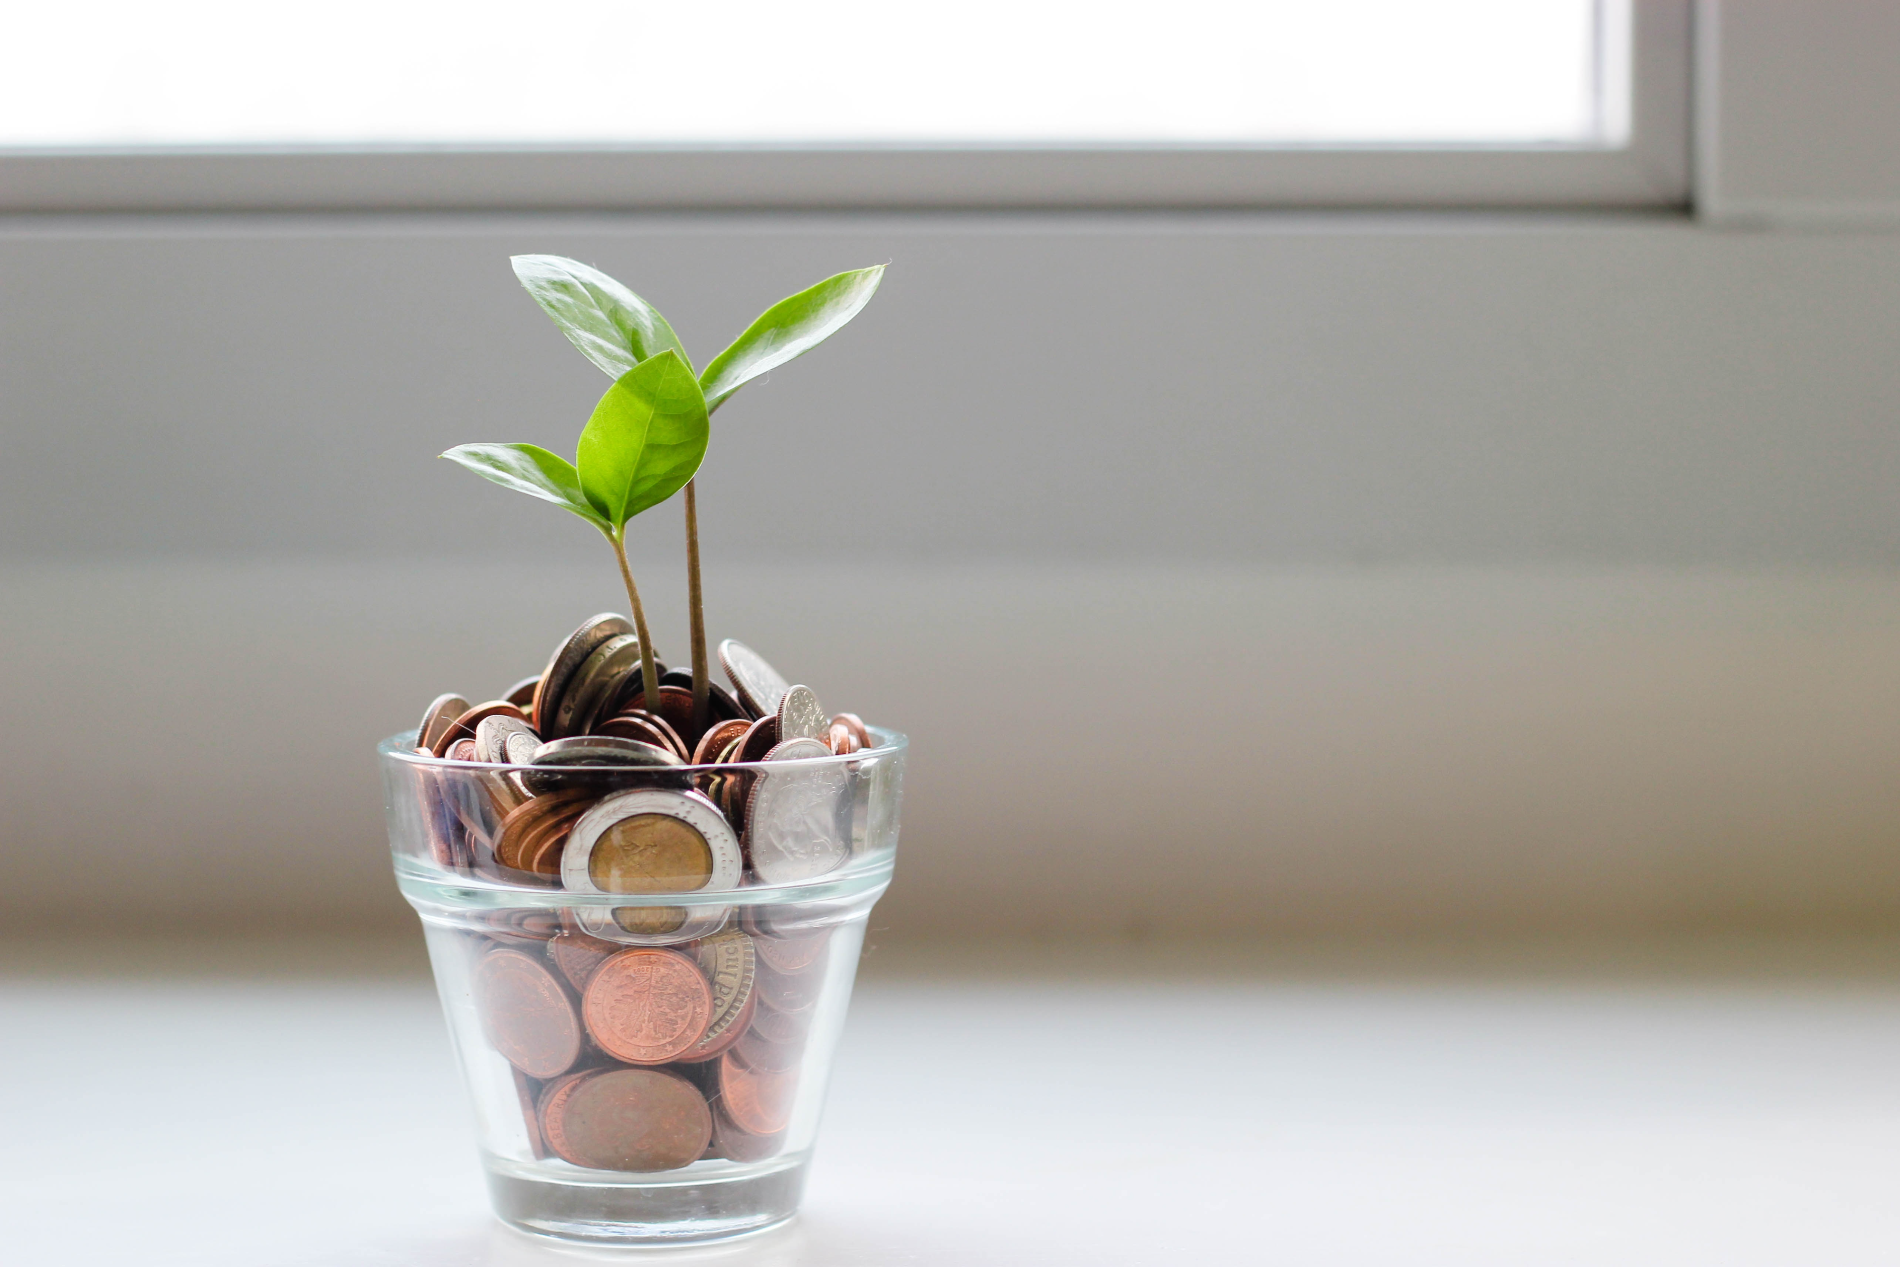 Imagem de um pote com moedas dentro, em cima das moedas um pequeno ramo de folhas cresce, representando "prosperidade". Foto usada para ilustrar o artigo de como ganhar dinheiro com apostas esportivas